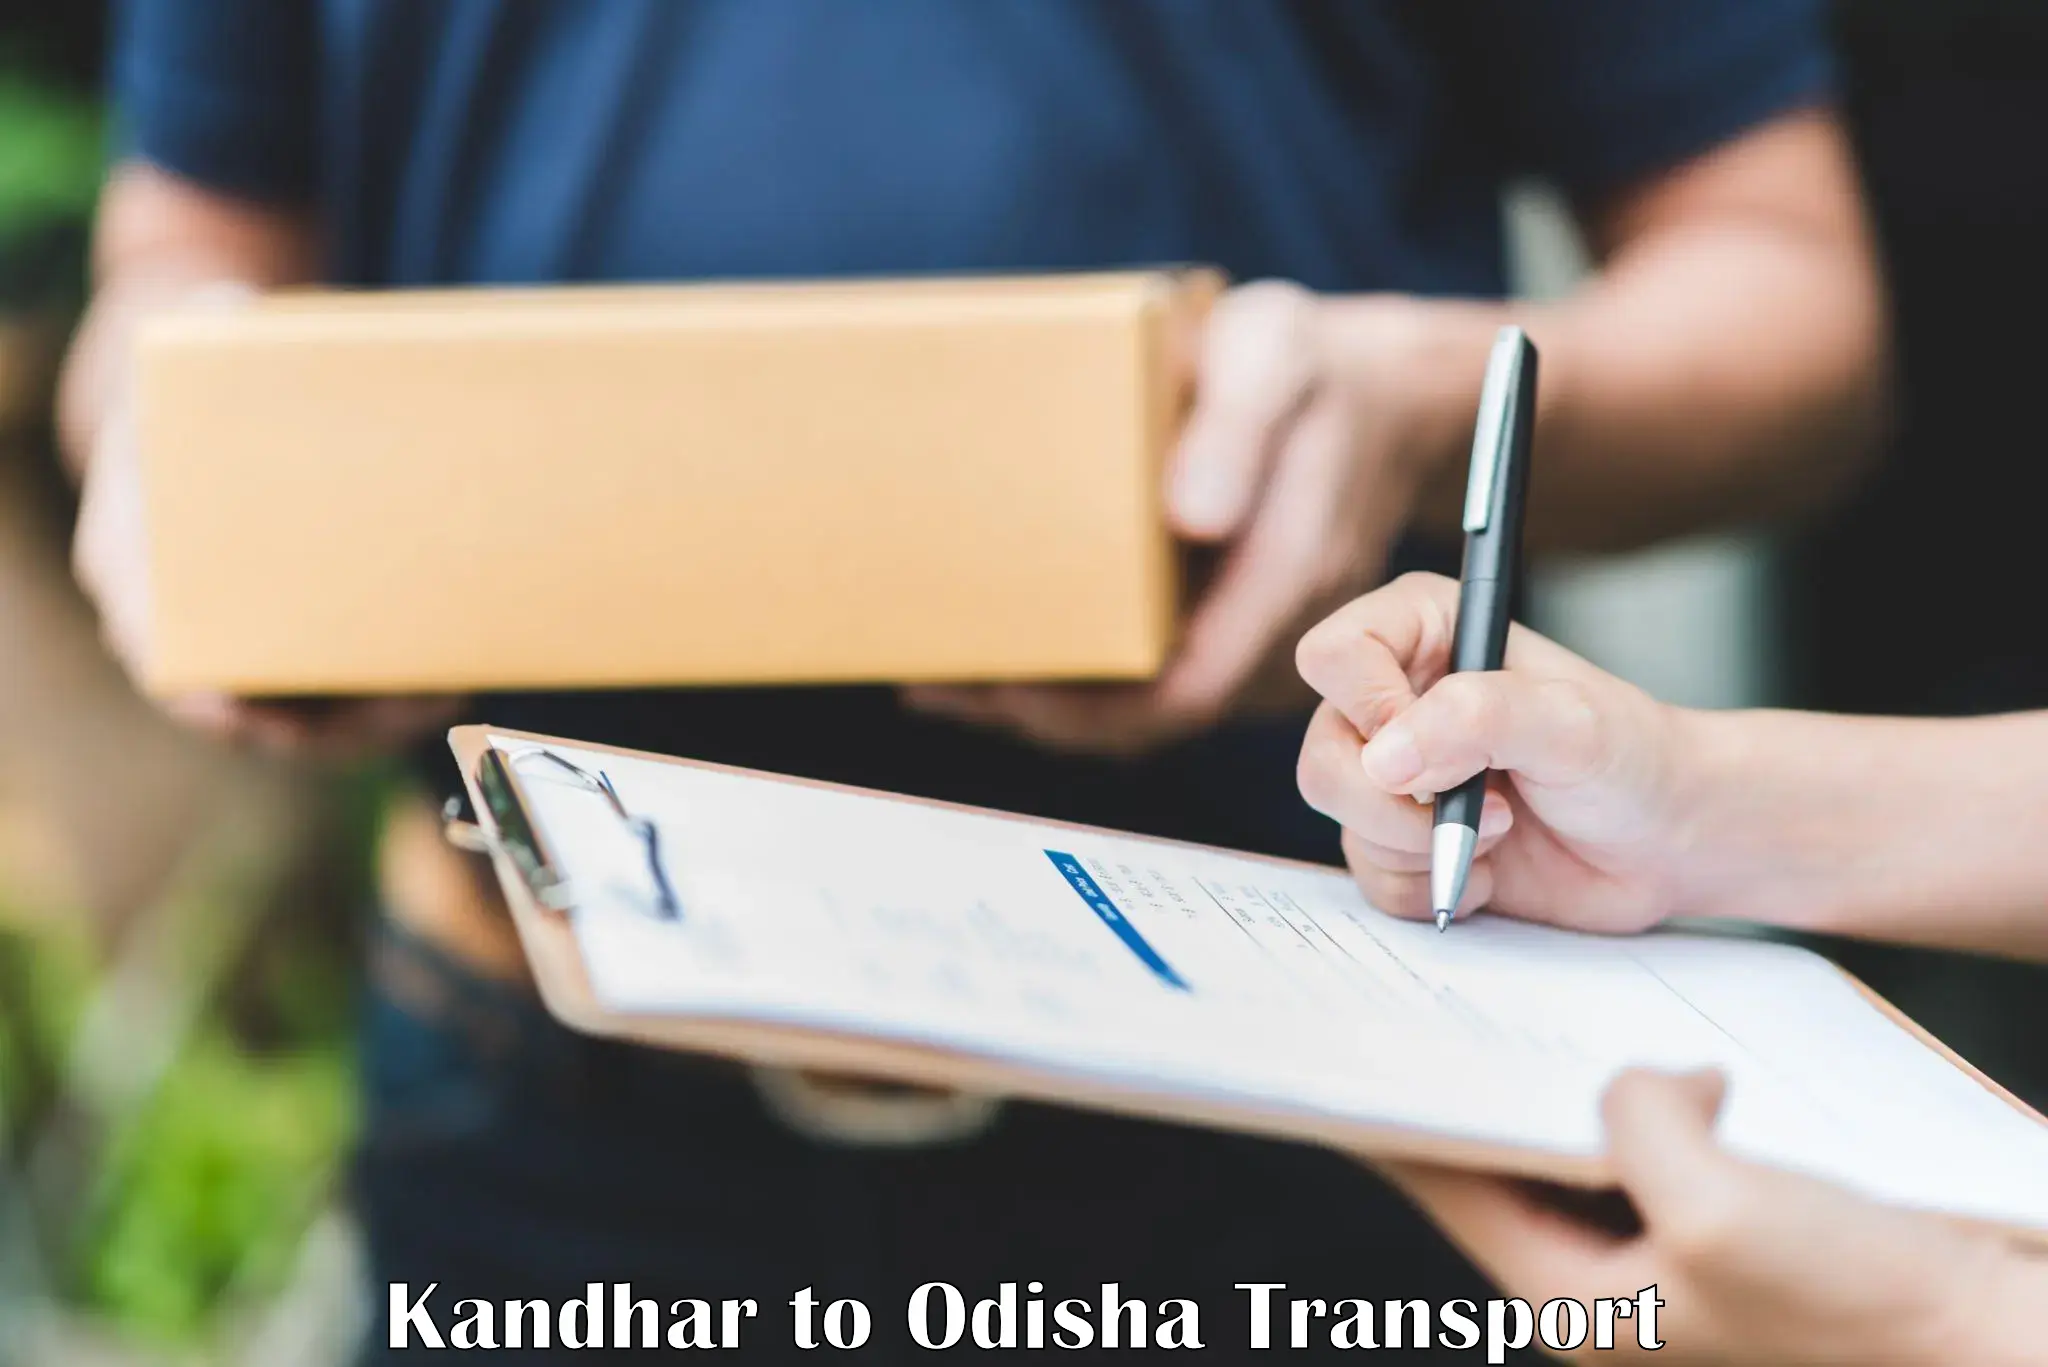 Daily parcel service transport Kandhar to Balasore